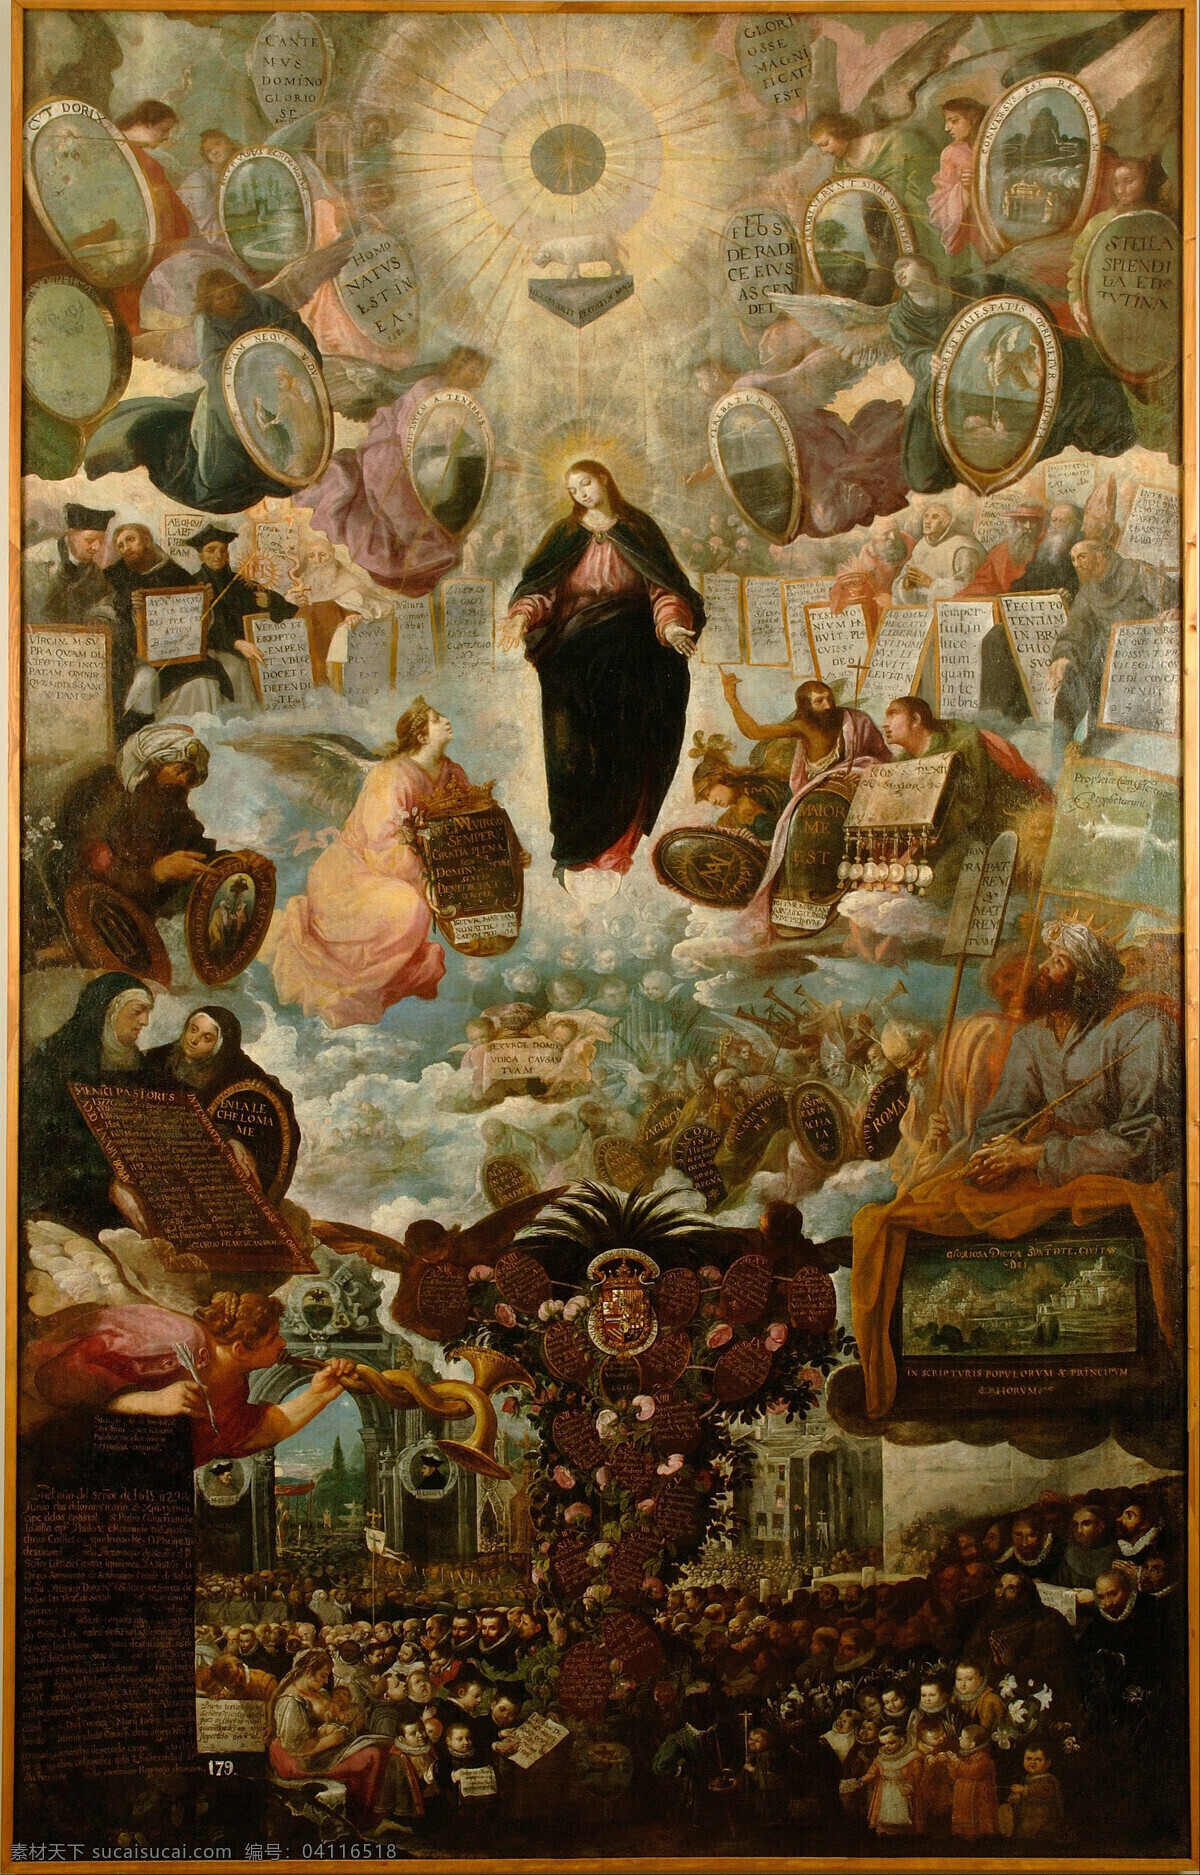 圣母玛丽娅 胡安 德罗 埃拉斯 作品 西班牙画家 宗教油画 圣母的功德 人间王公贵族 祈祷 天堂 天使 歌颂 古典油画 油画 绘画书法 文化艺术